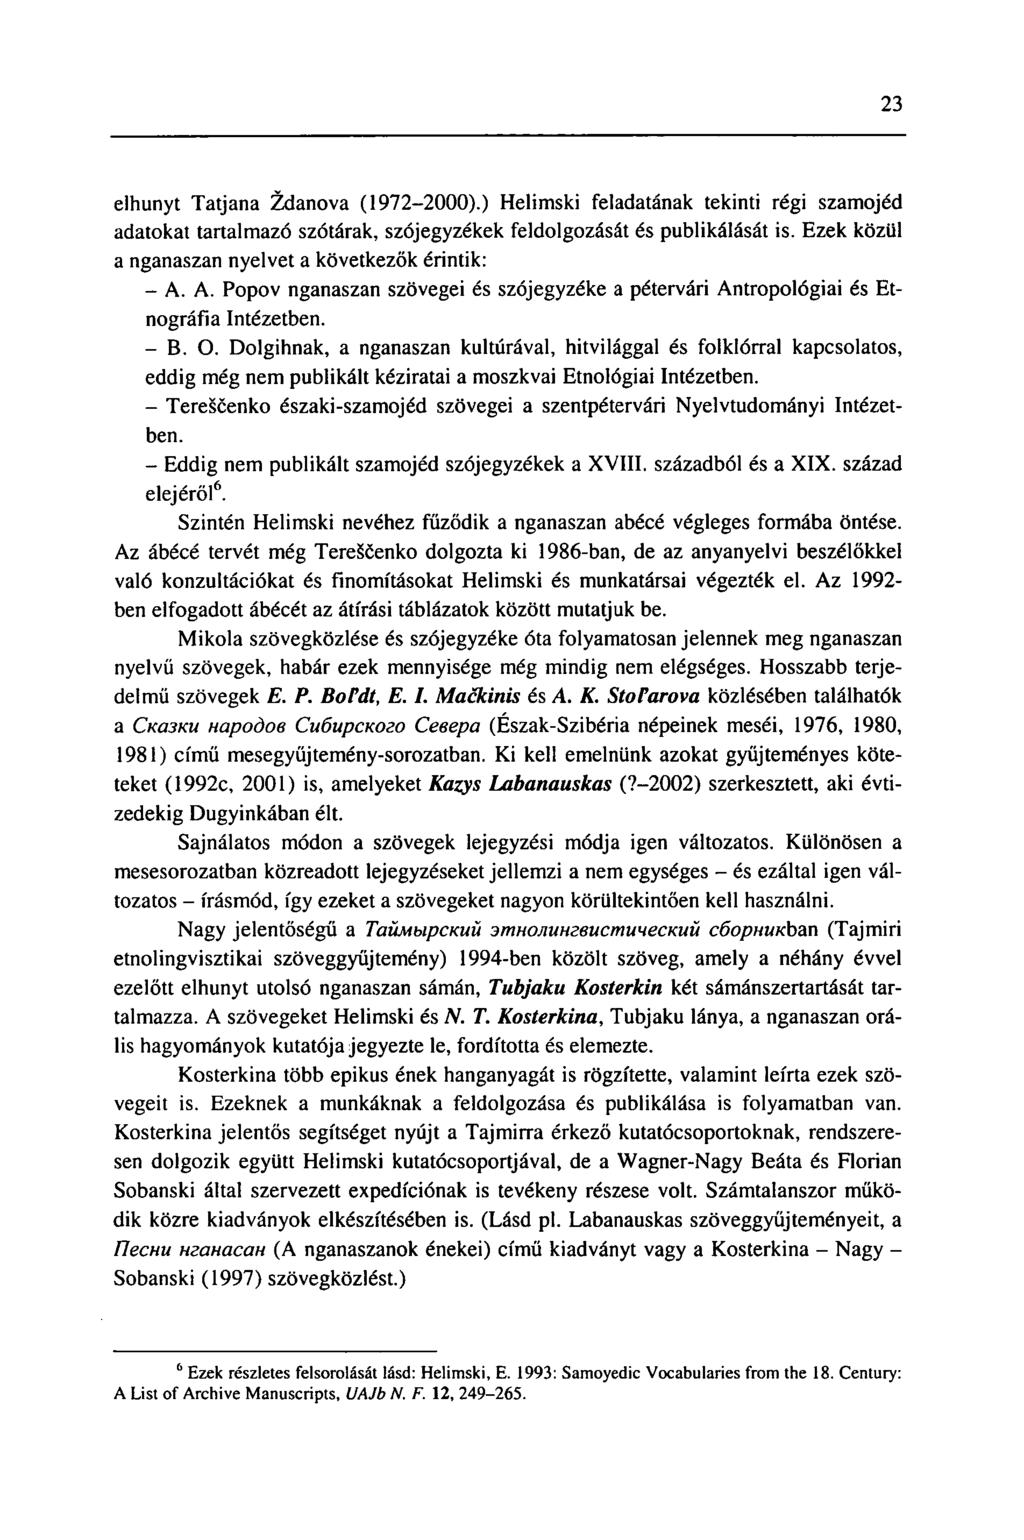 23 elhunyt Tatjana Zdanova (1972-2000).) Helimski feladatának tekinti régi szamojéd adatokat tartalmazó szótárak, szójegyzékek feldolgozását és publikálását is.